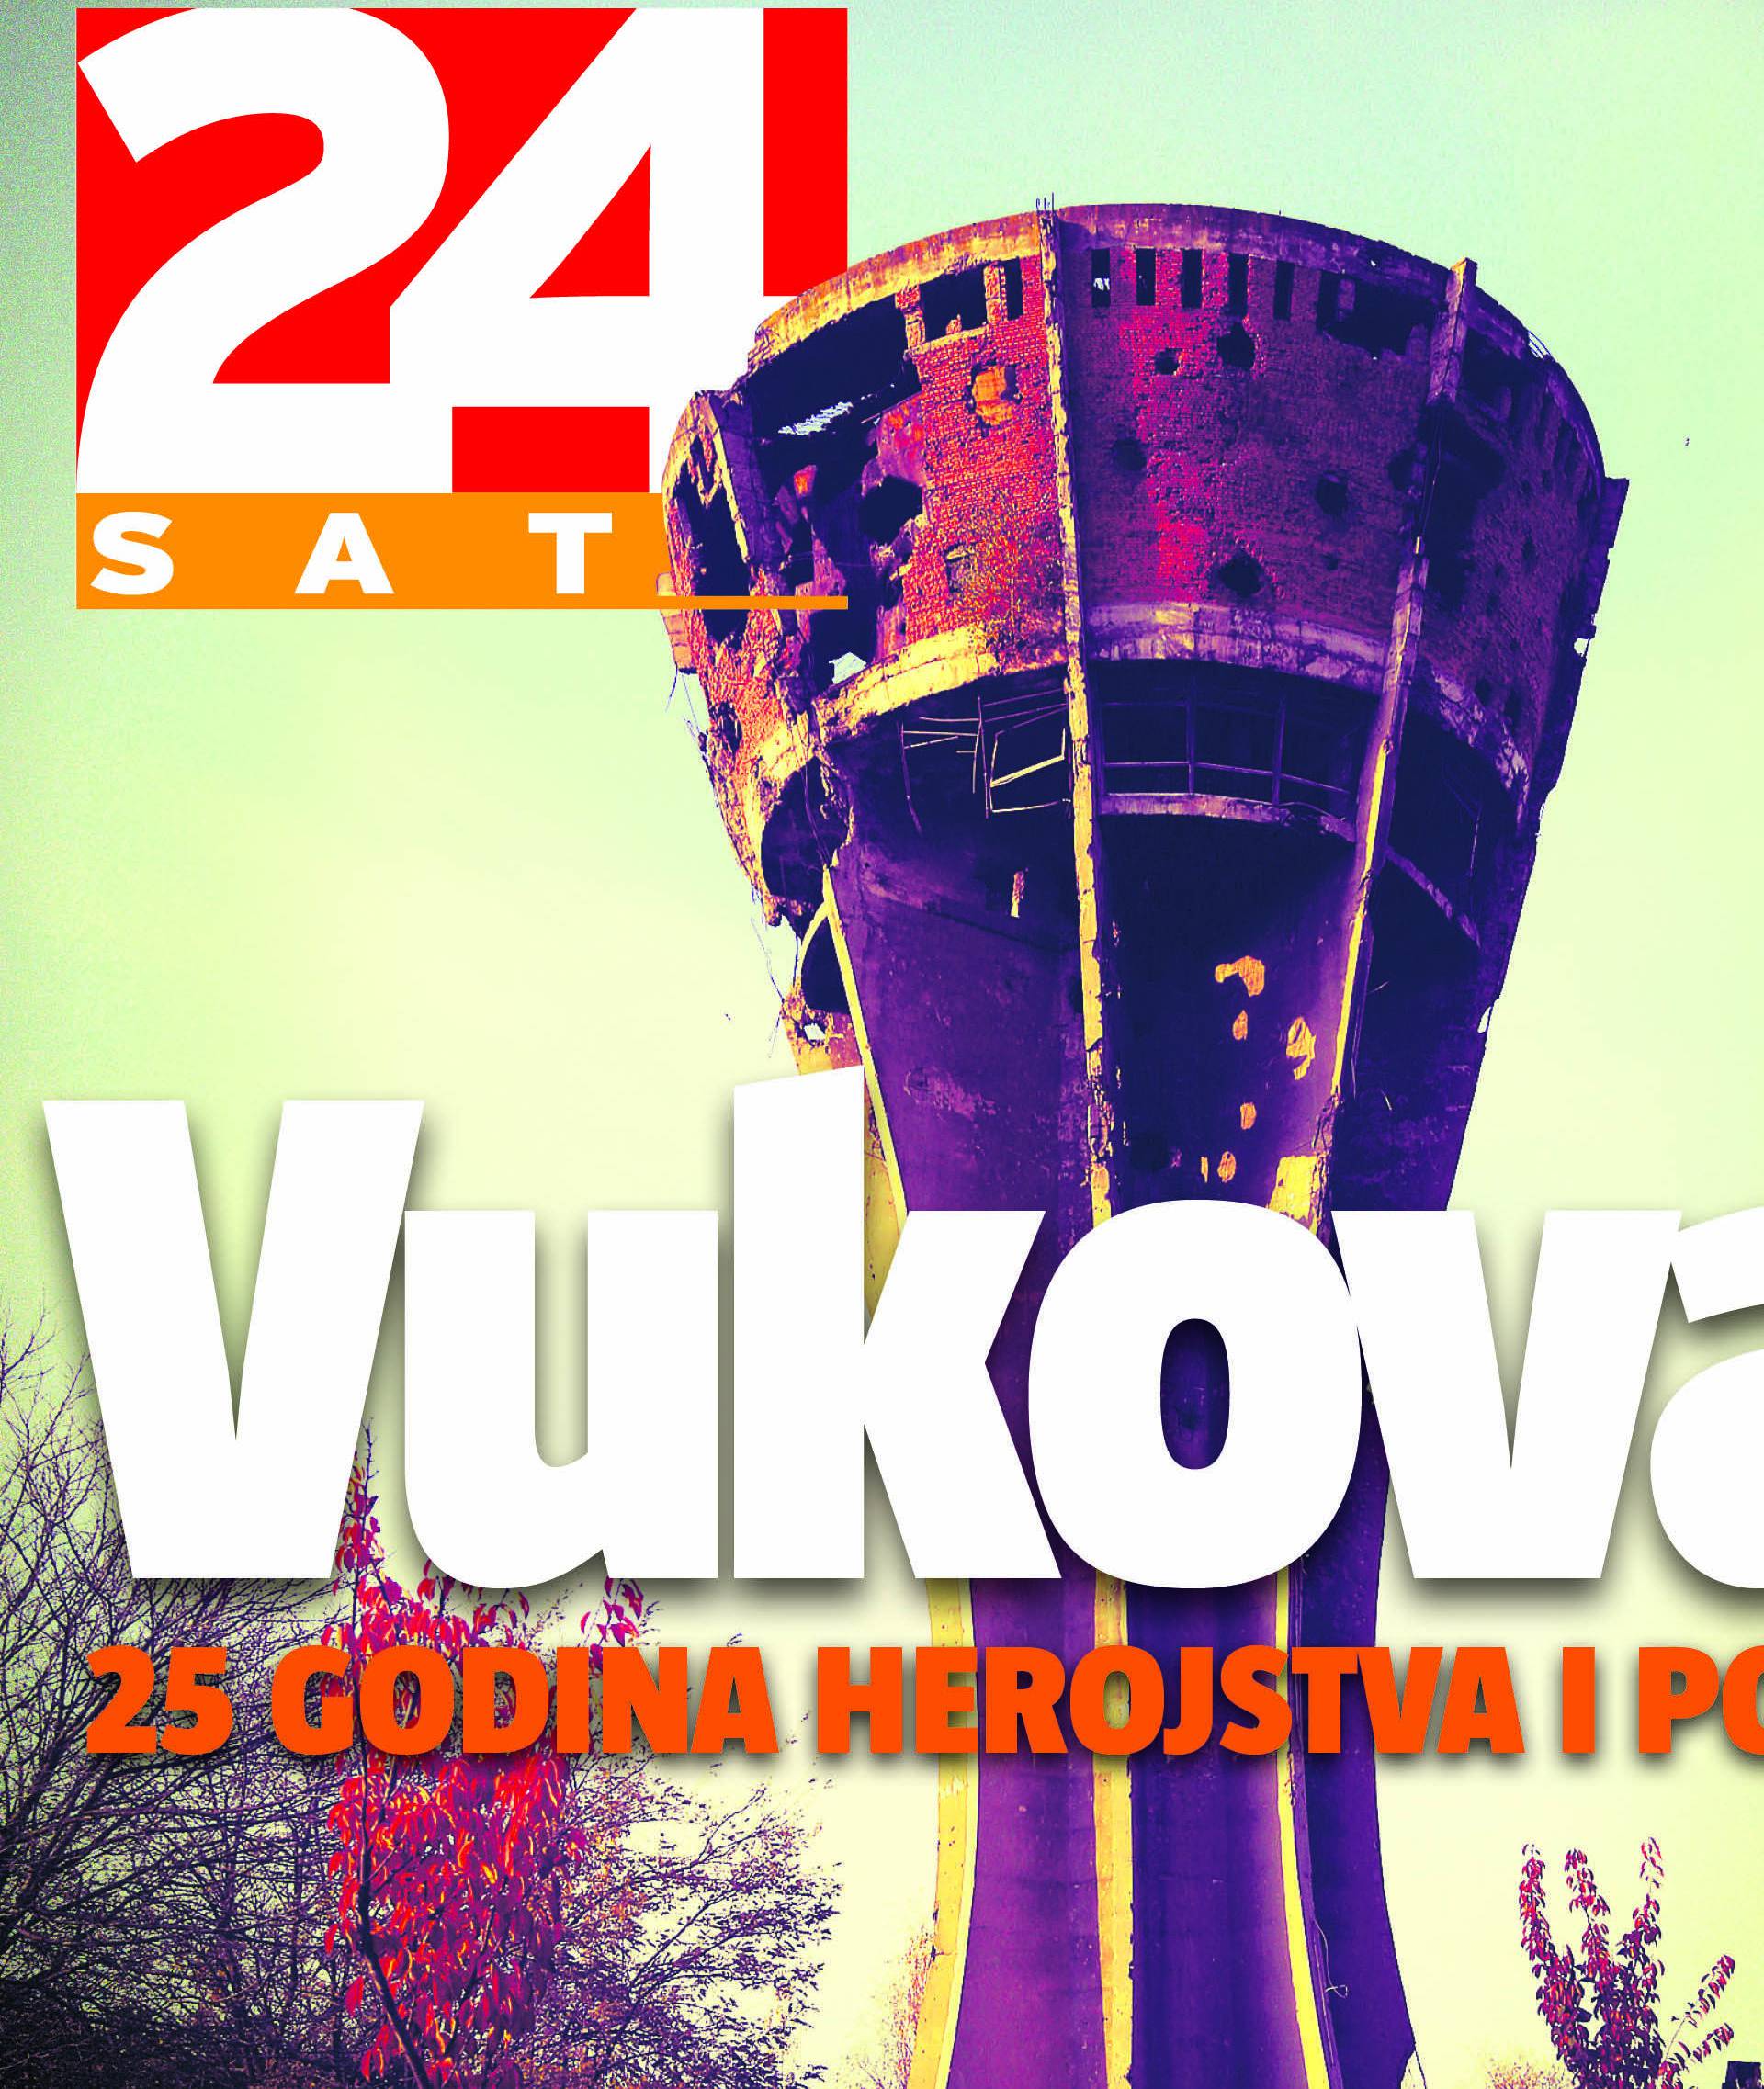 Grad Vukovar - mjesto odličnih ideja,  a ne mjera za pesimizam